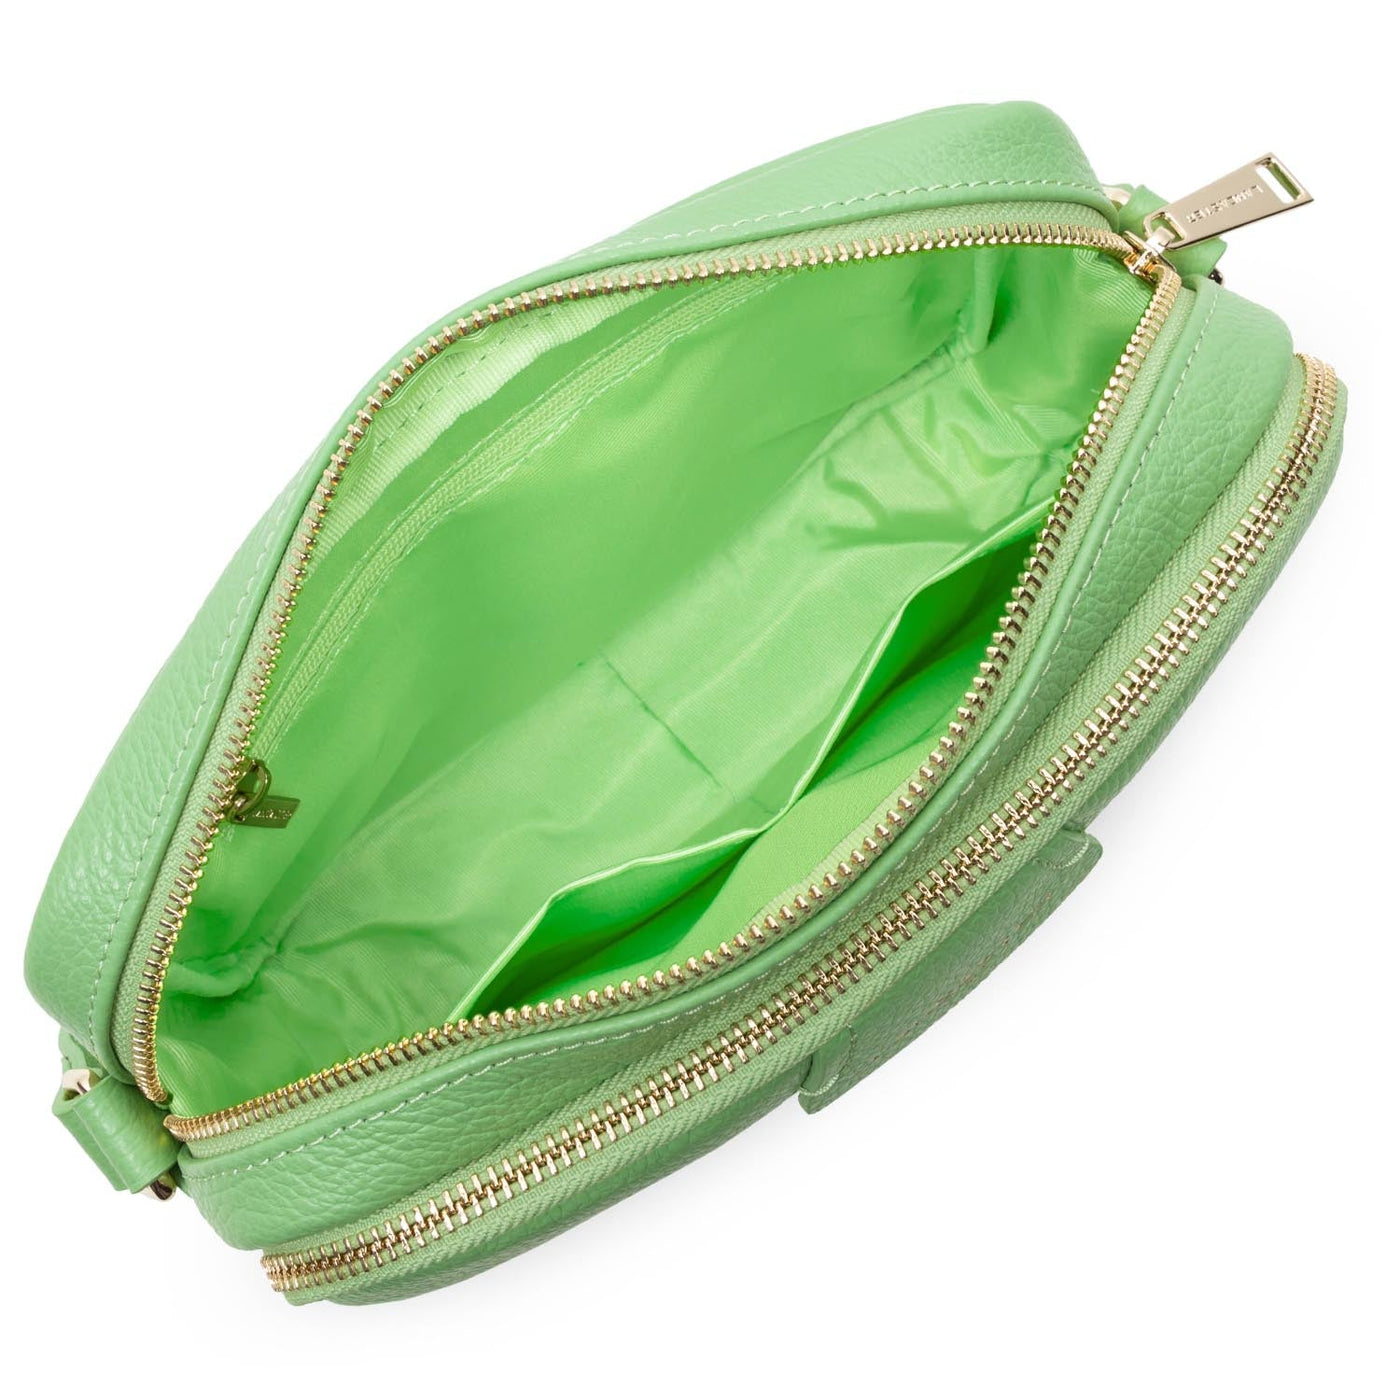 m crossbody bag - dune #couleur_vert-amande